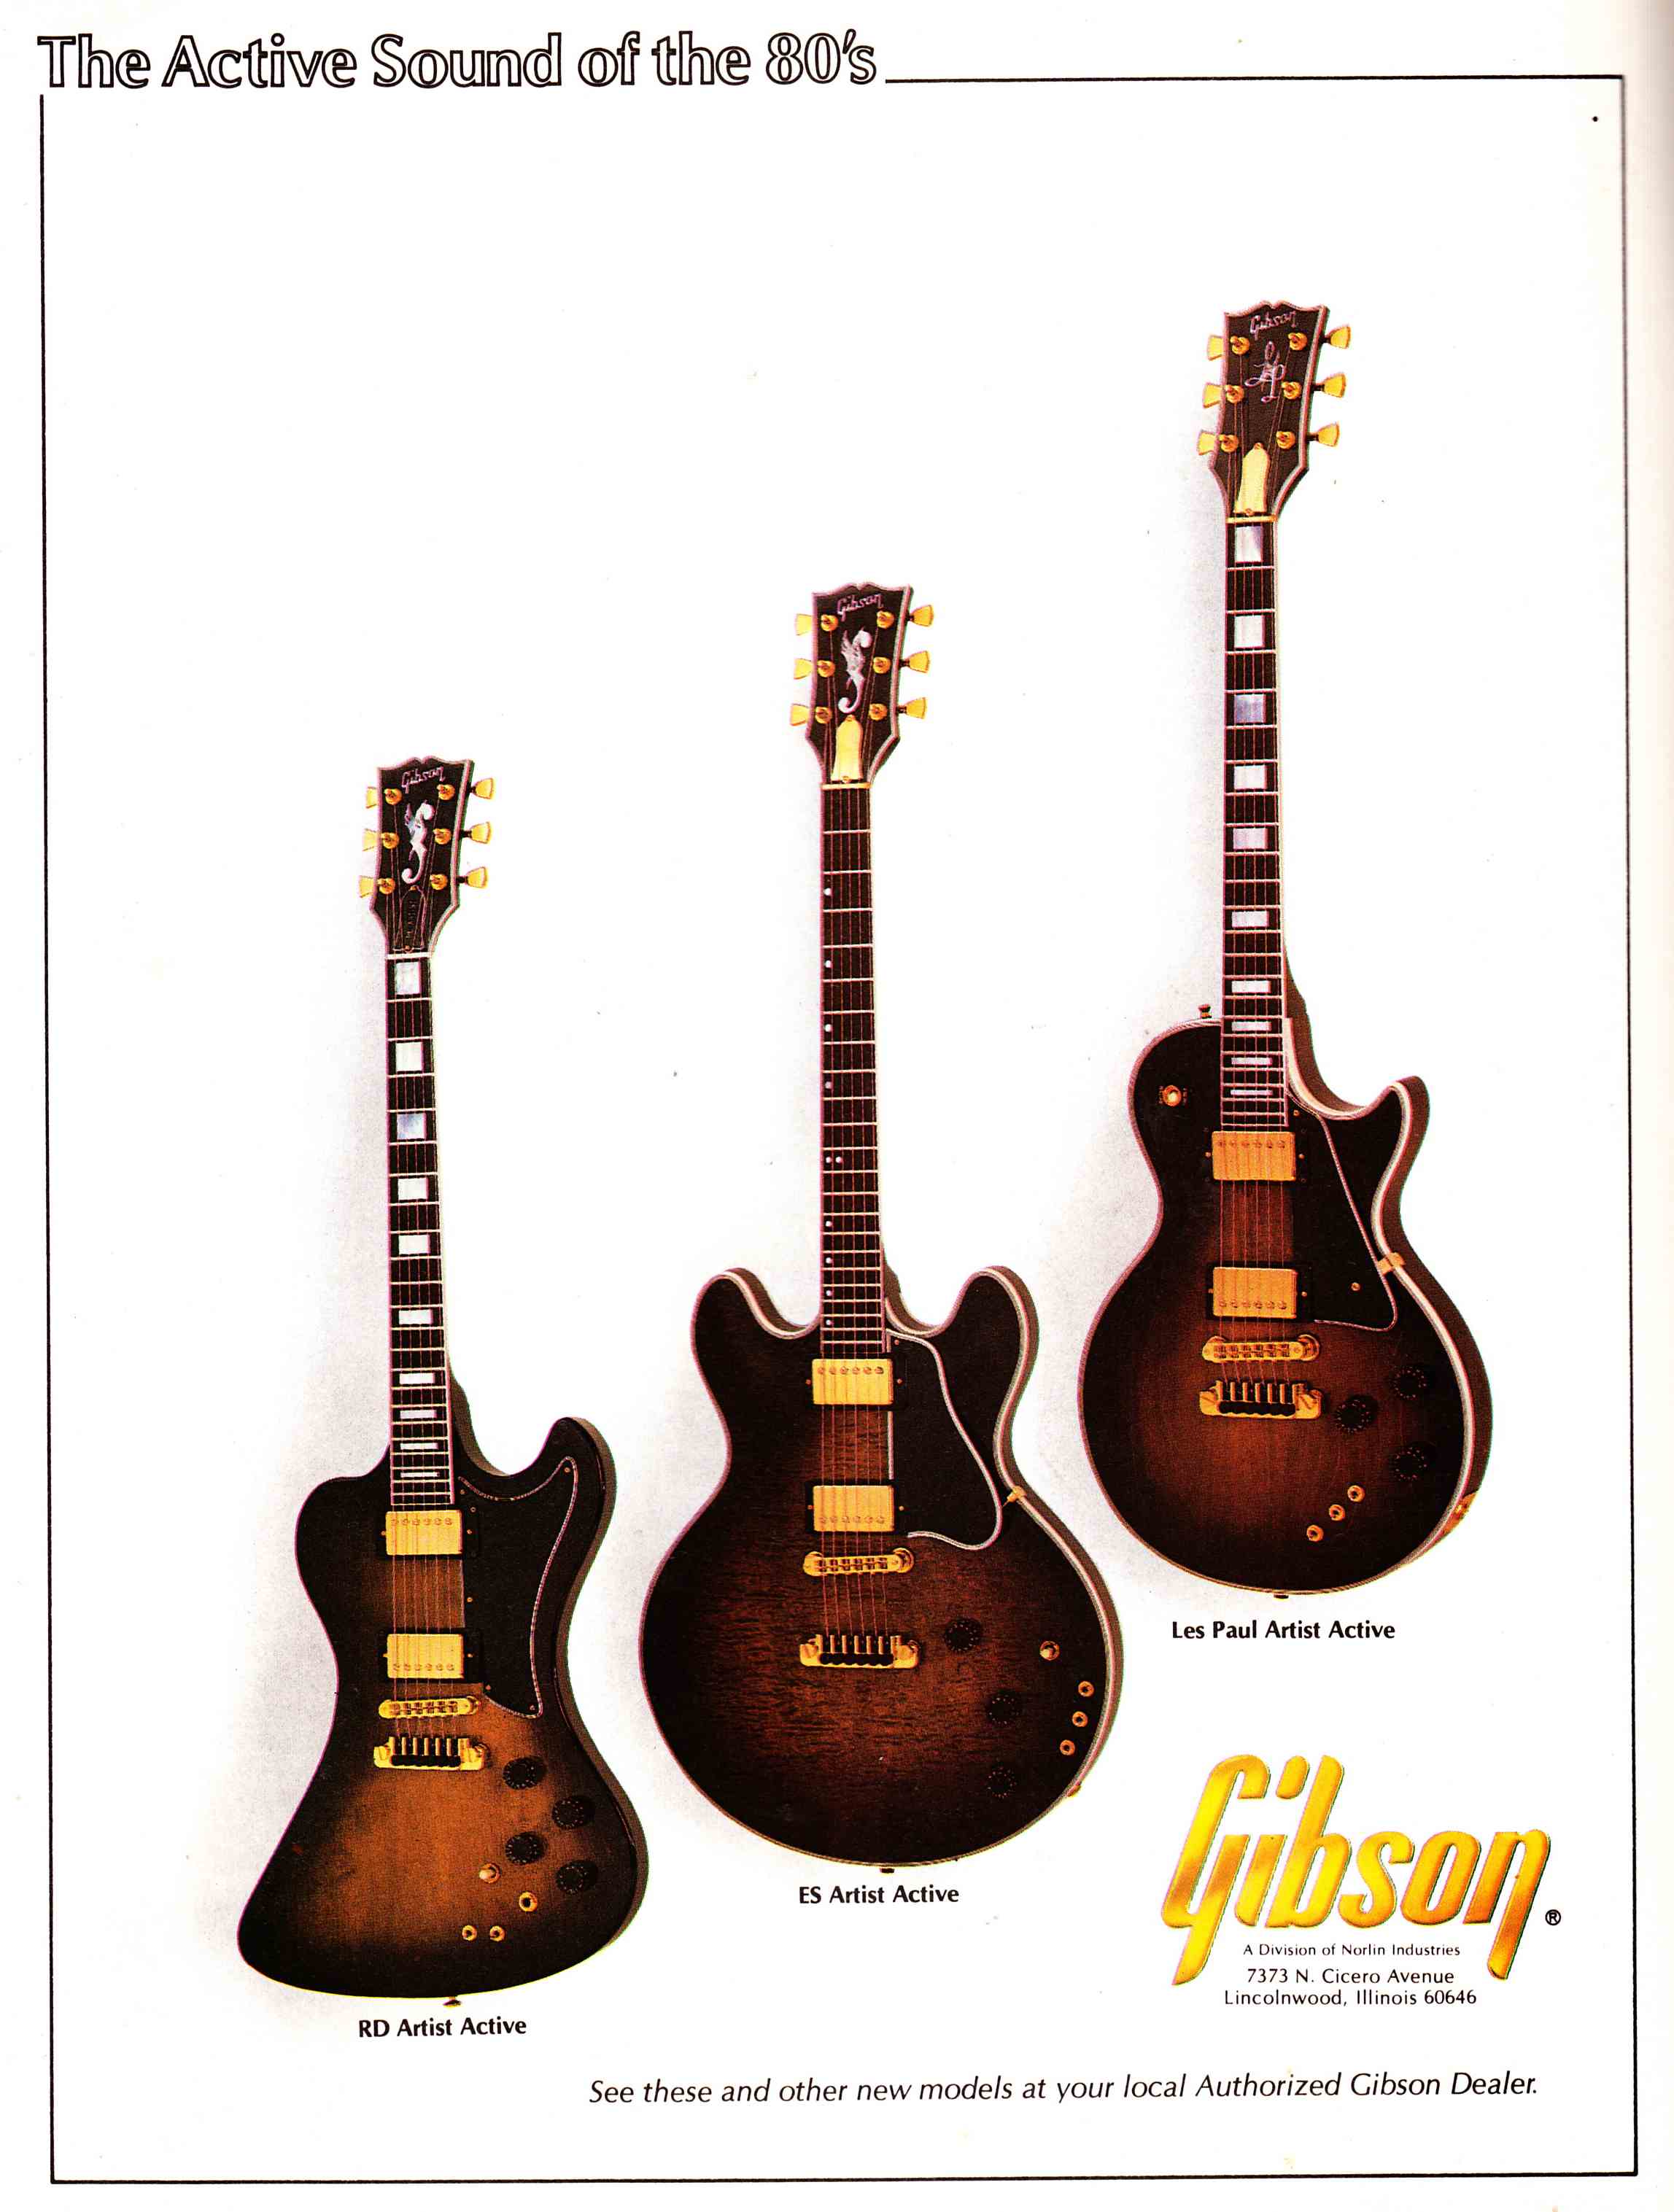 gibson-2011-catalog